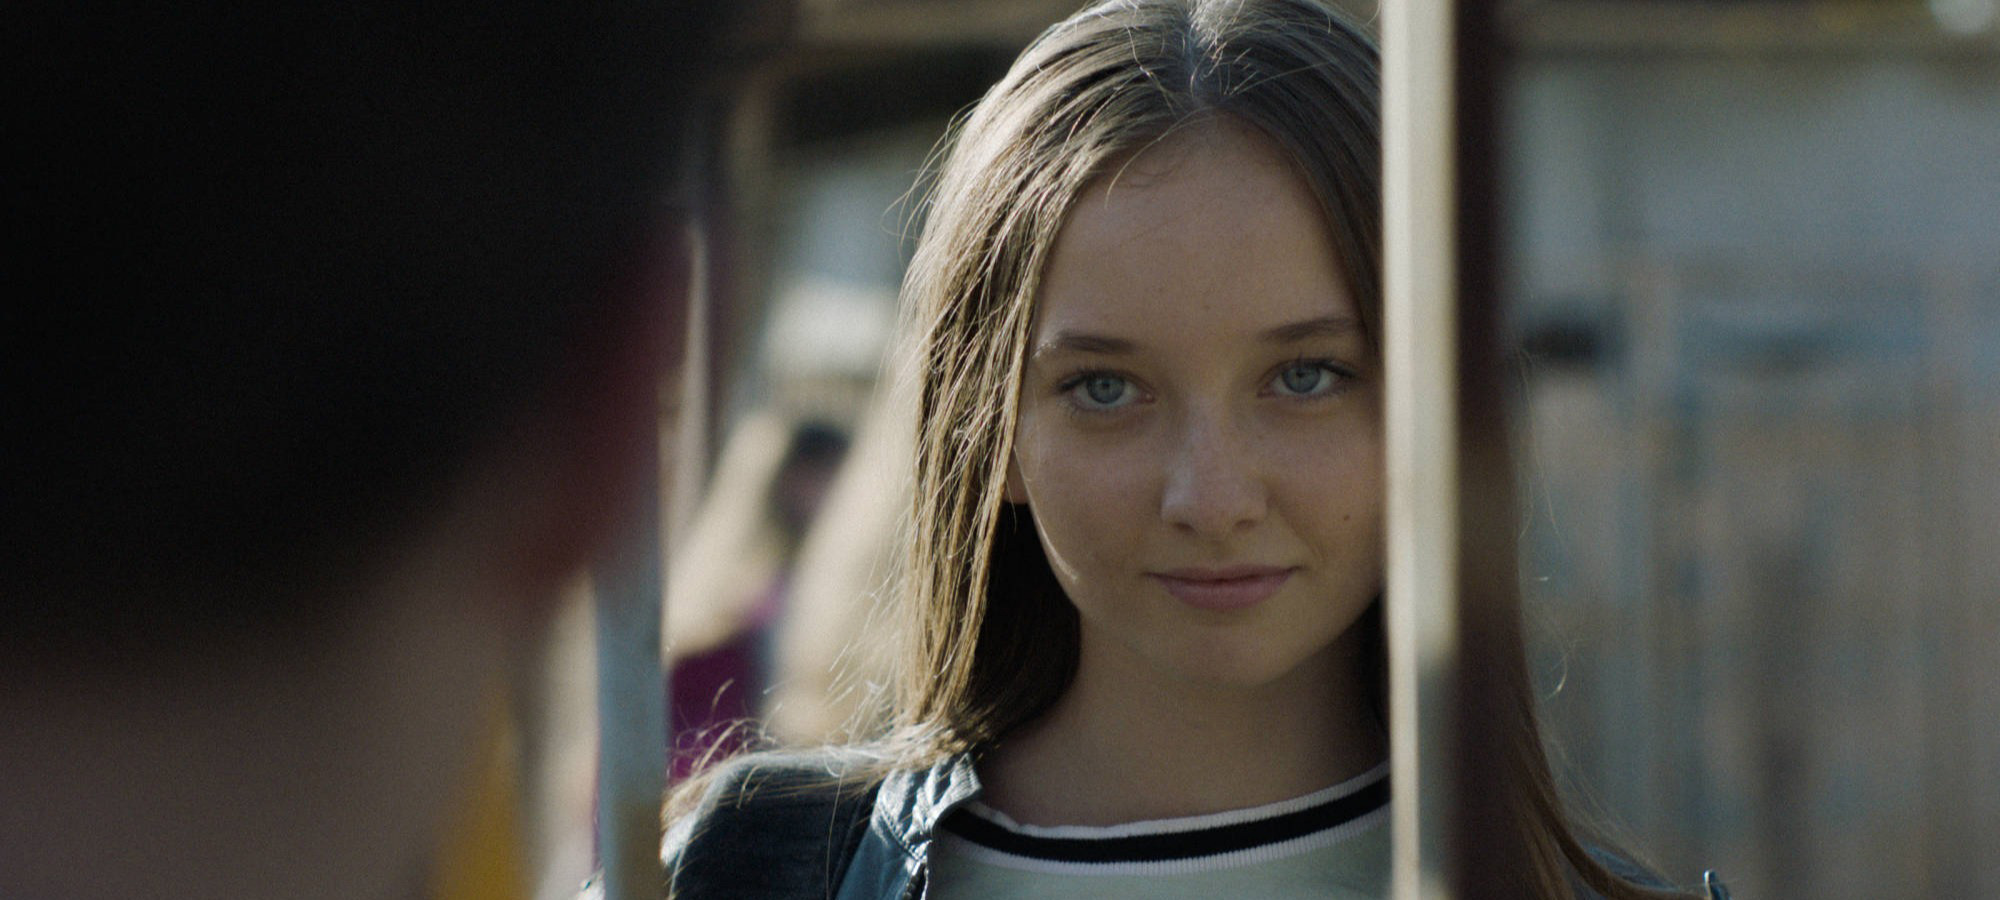 Cena do filme Irmandade, mostra uma garota branca e jovem de olhos claros e cabelos compridos olhando para a frente.